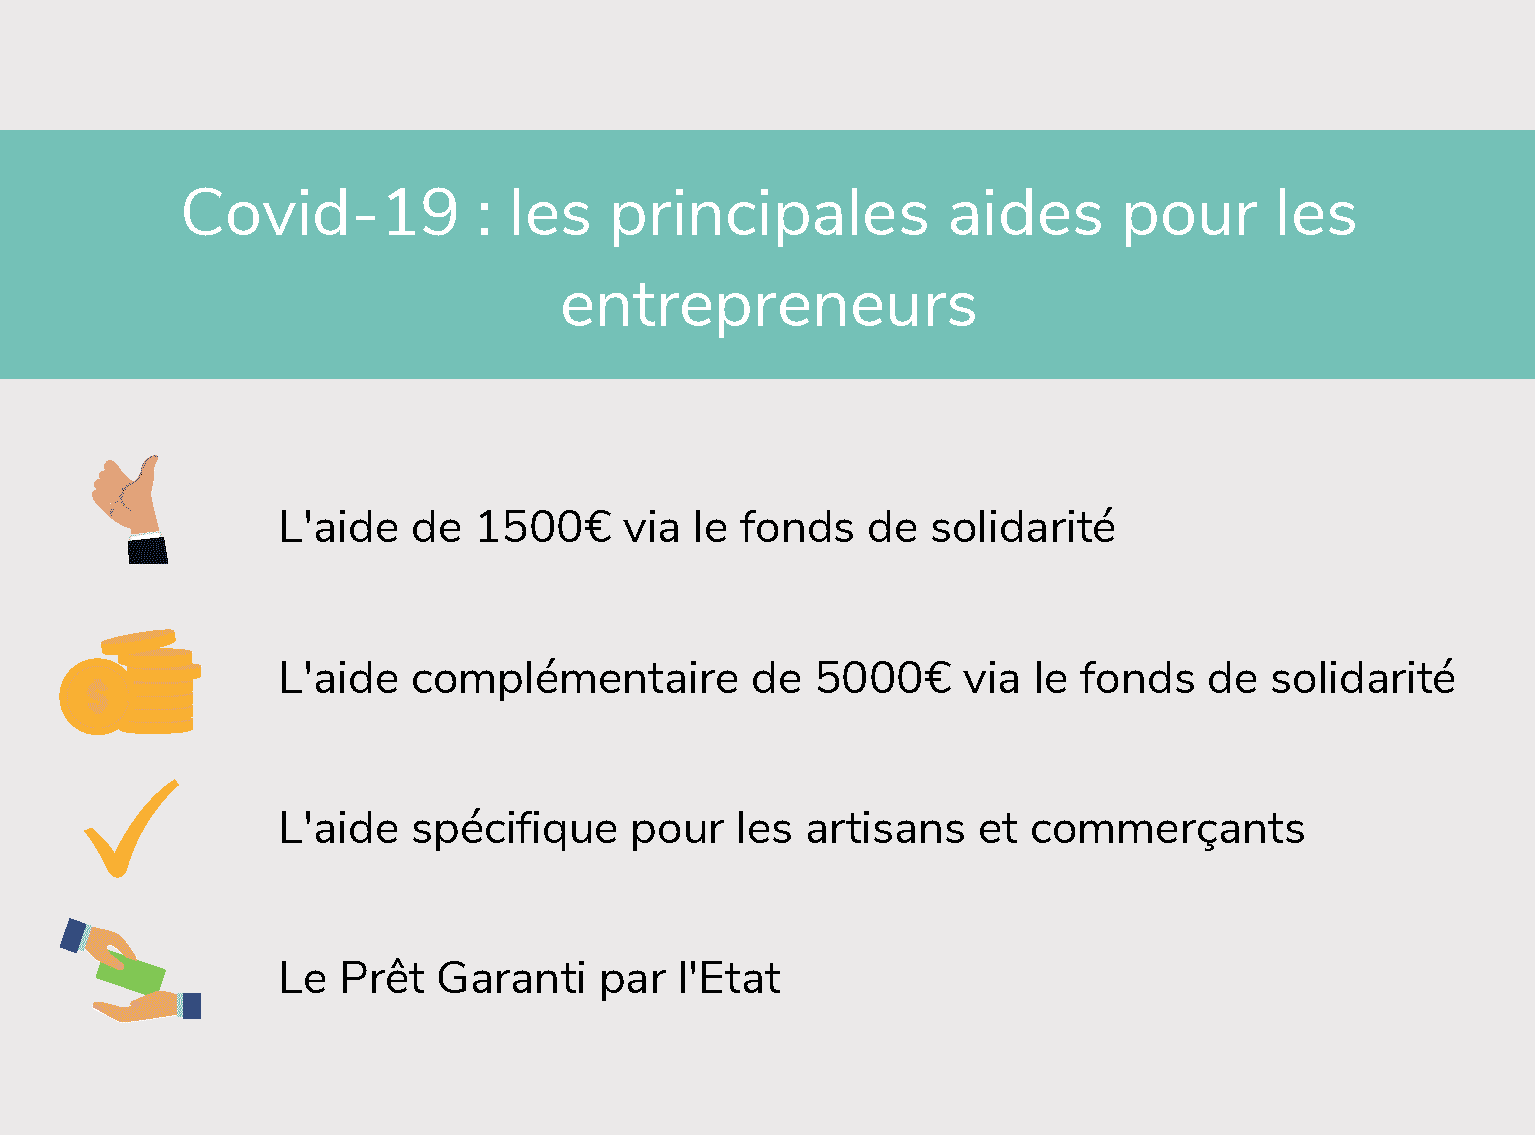 Covid-19: quelles sont les aides financières pour les entrepreneurs ?